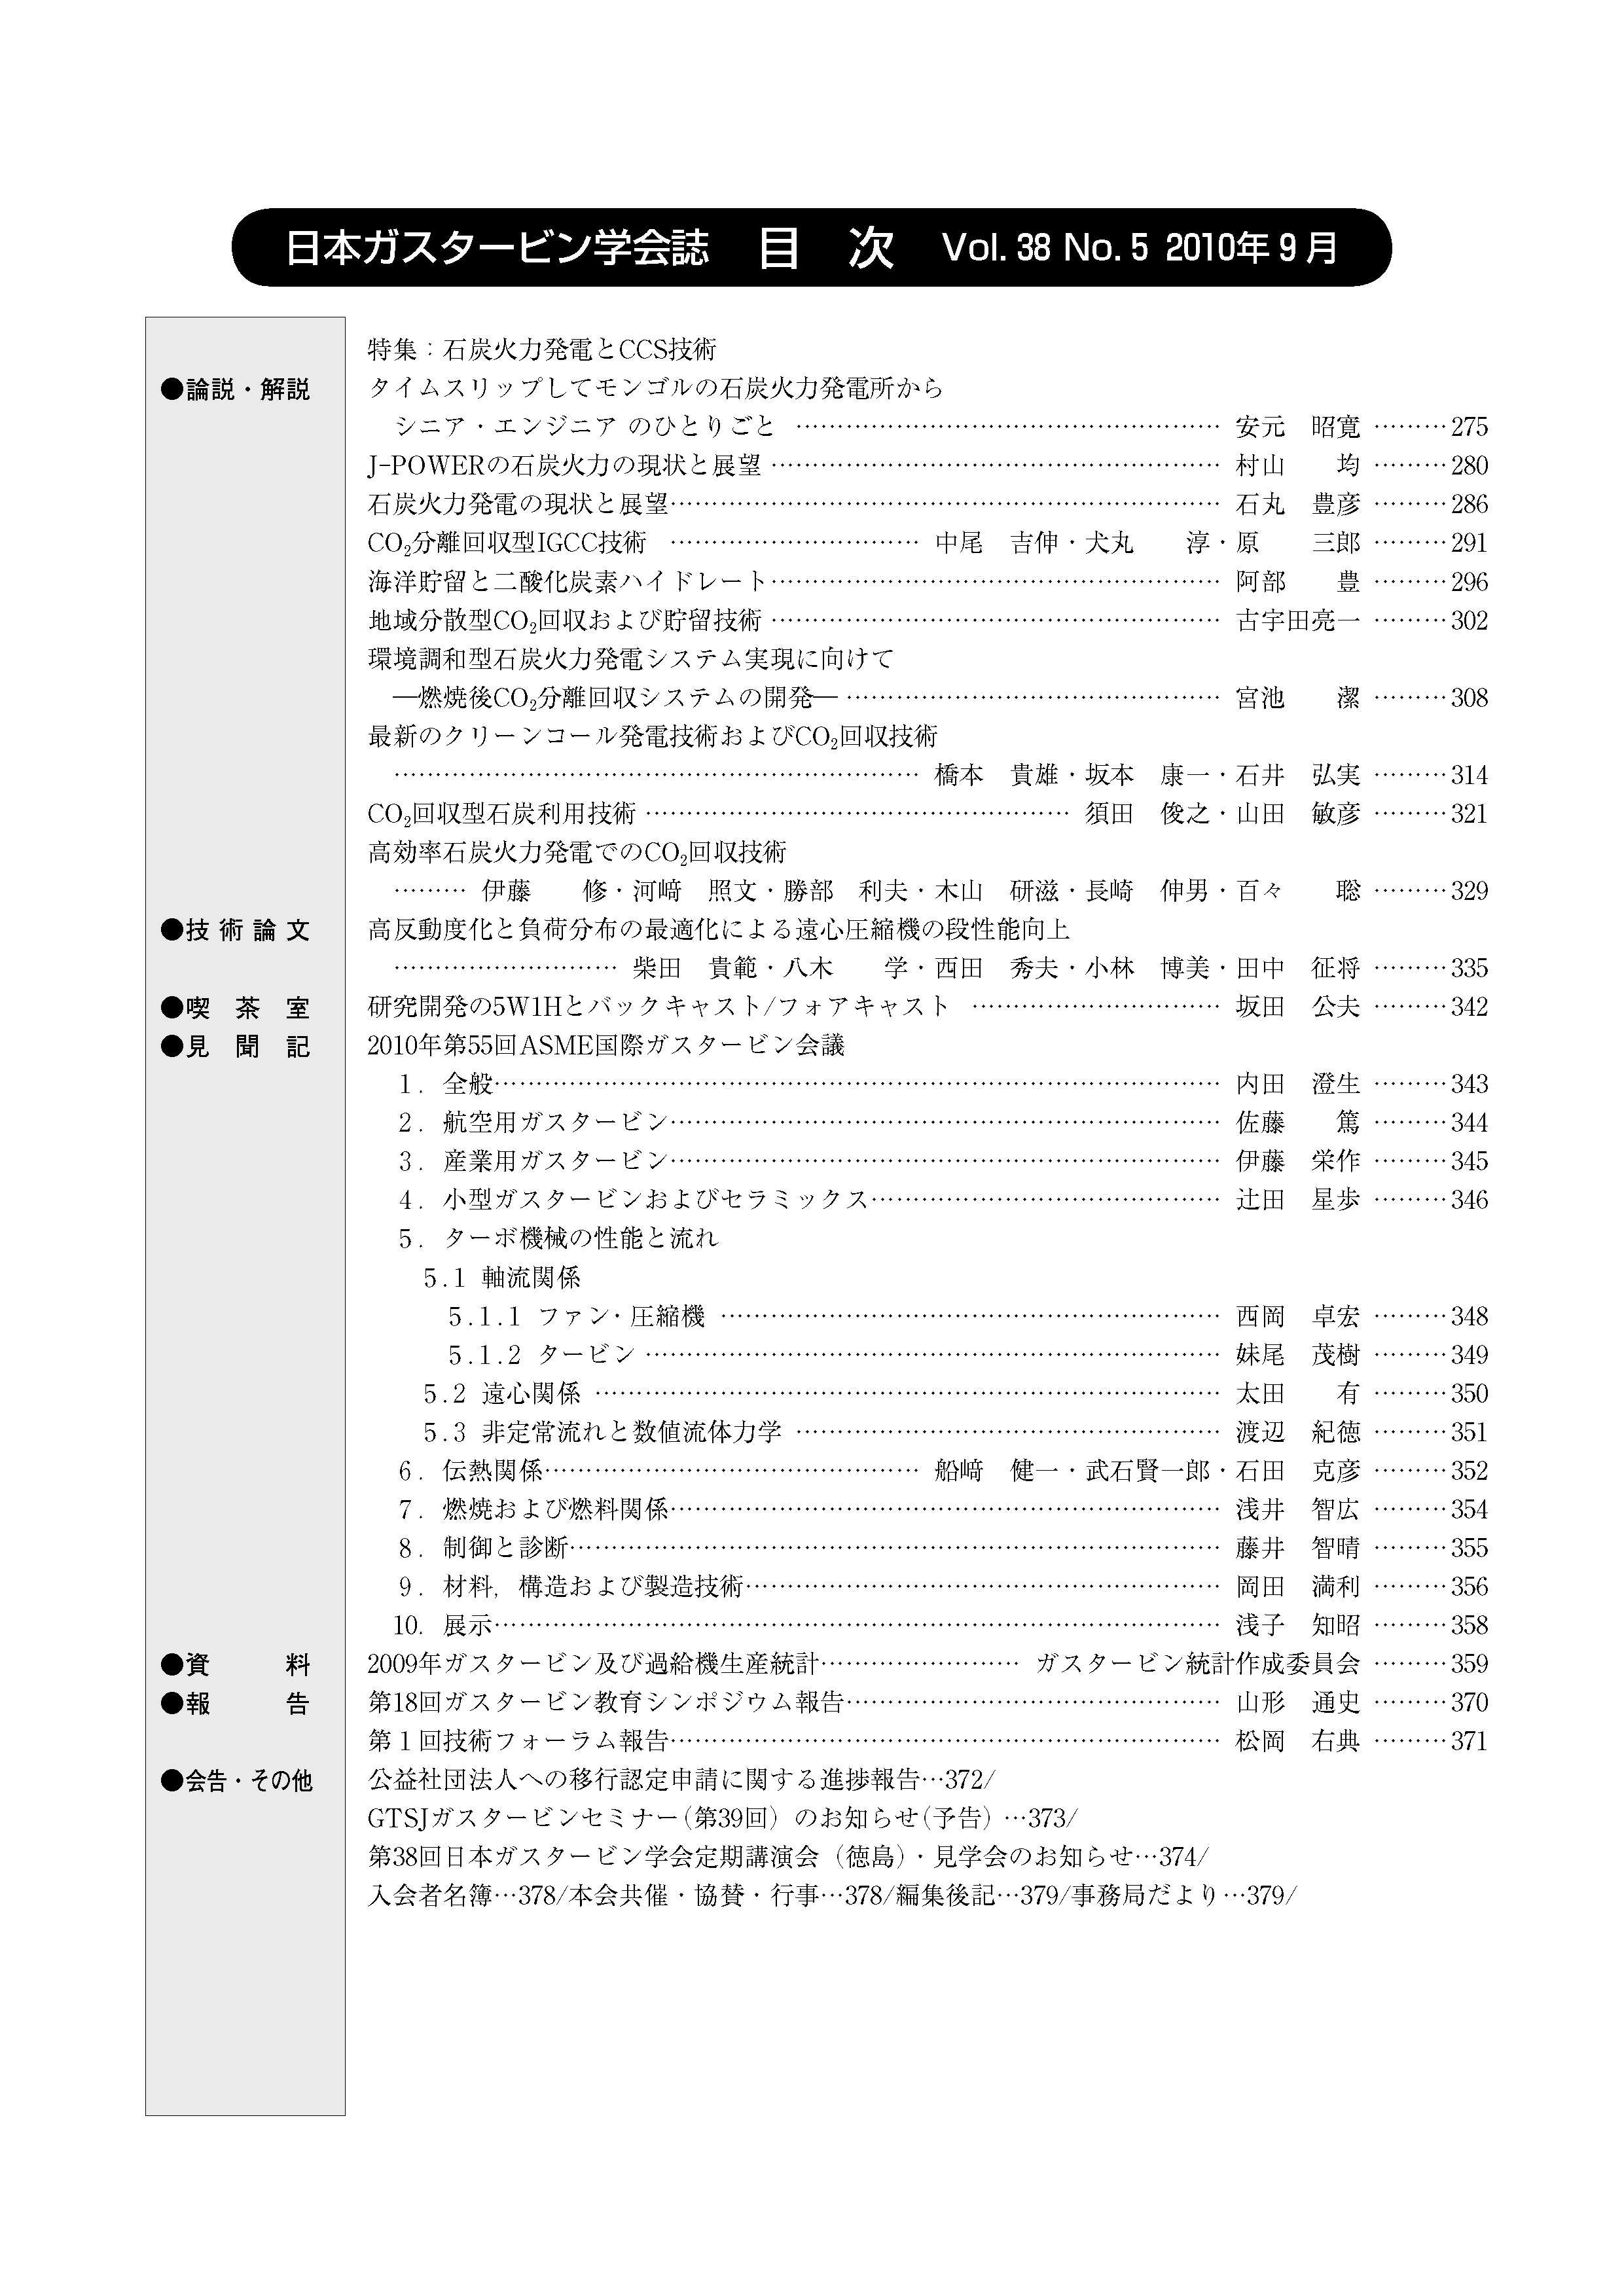 日本ガスタービン学会誌 Vol.38 No.5 2010年9月 目次画像